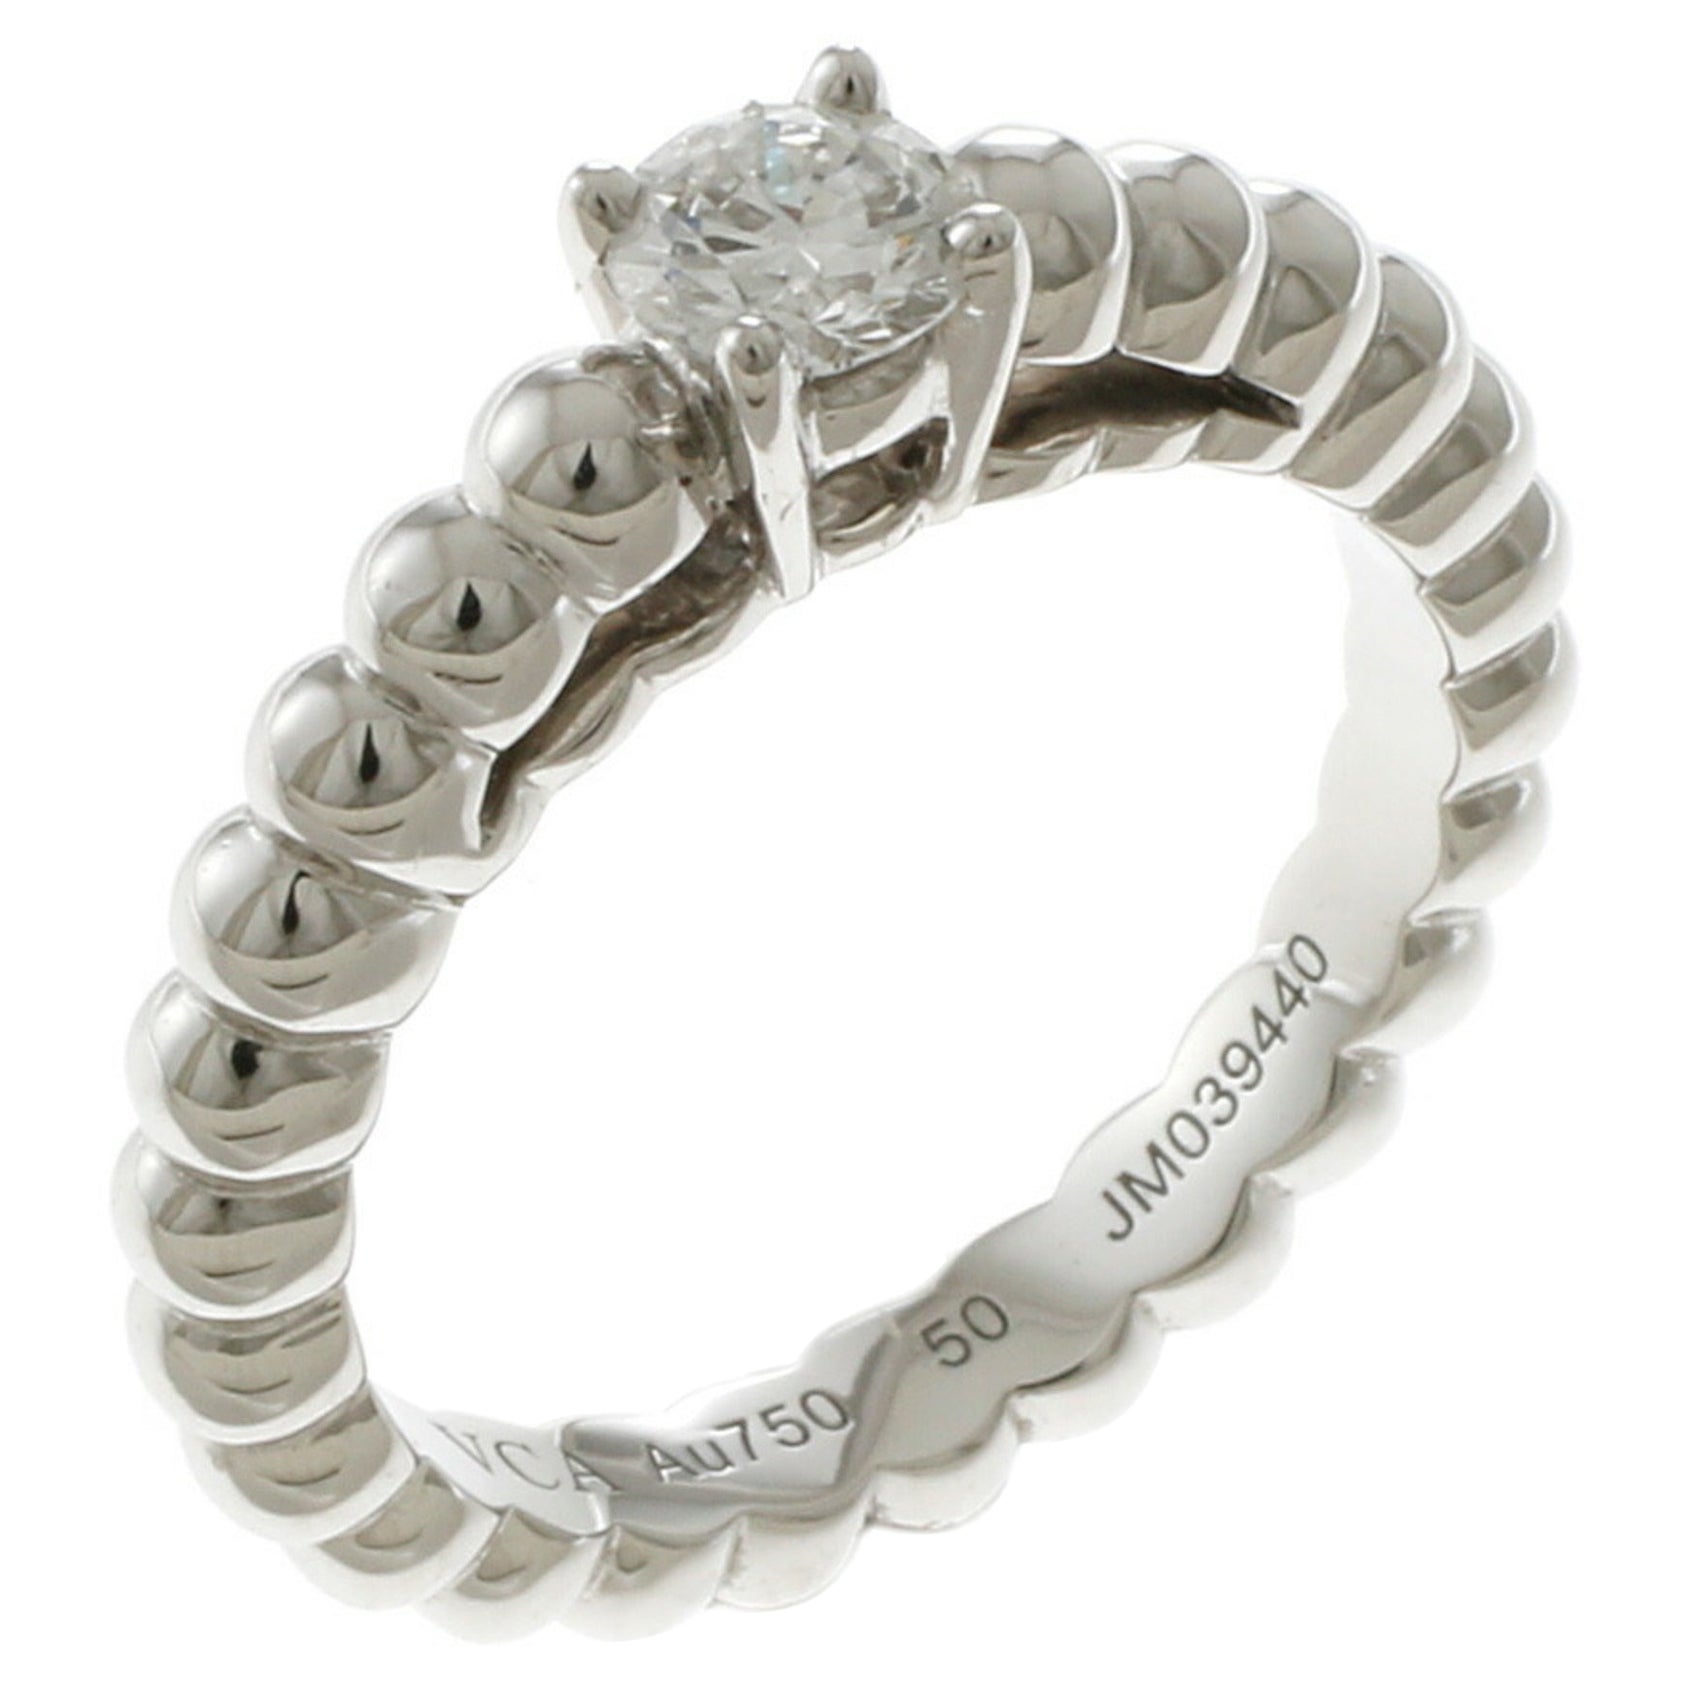 Van Cleef & Arpels Perle Diamond Ring in 18K White Gold